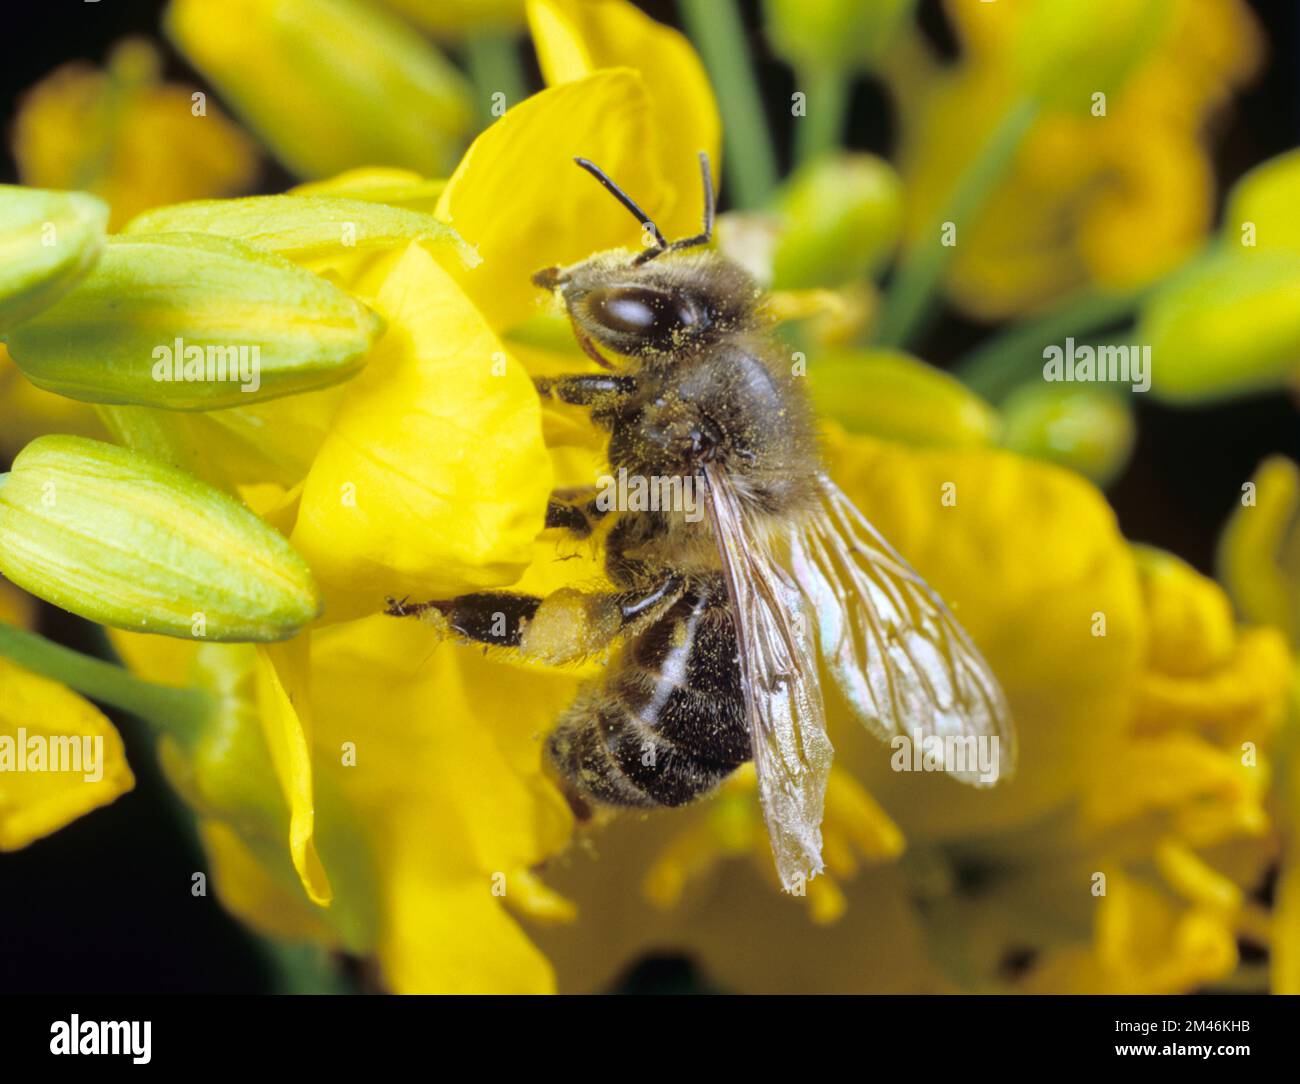 Arbeiter-Honigbiene (APIs mellifera) ein wichtiger Bestäuber, der Nektar und Pollen aus den gelben Blüten des Raps sammelt, Mai Stockfoto